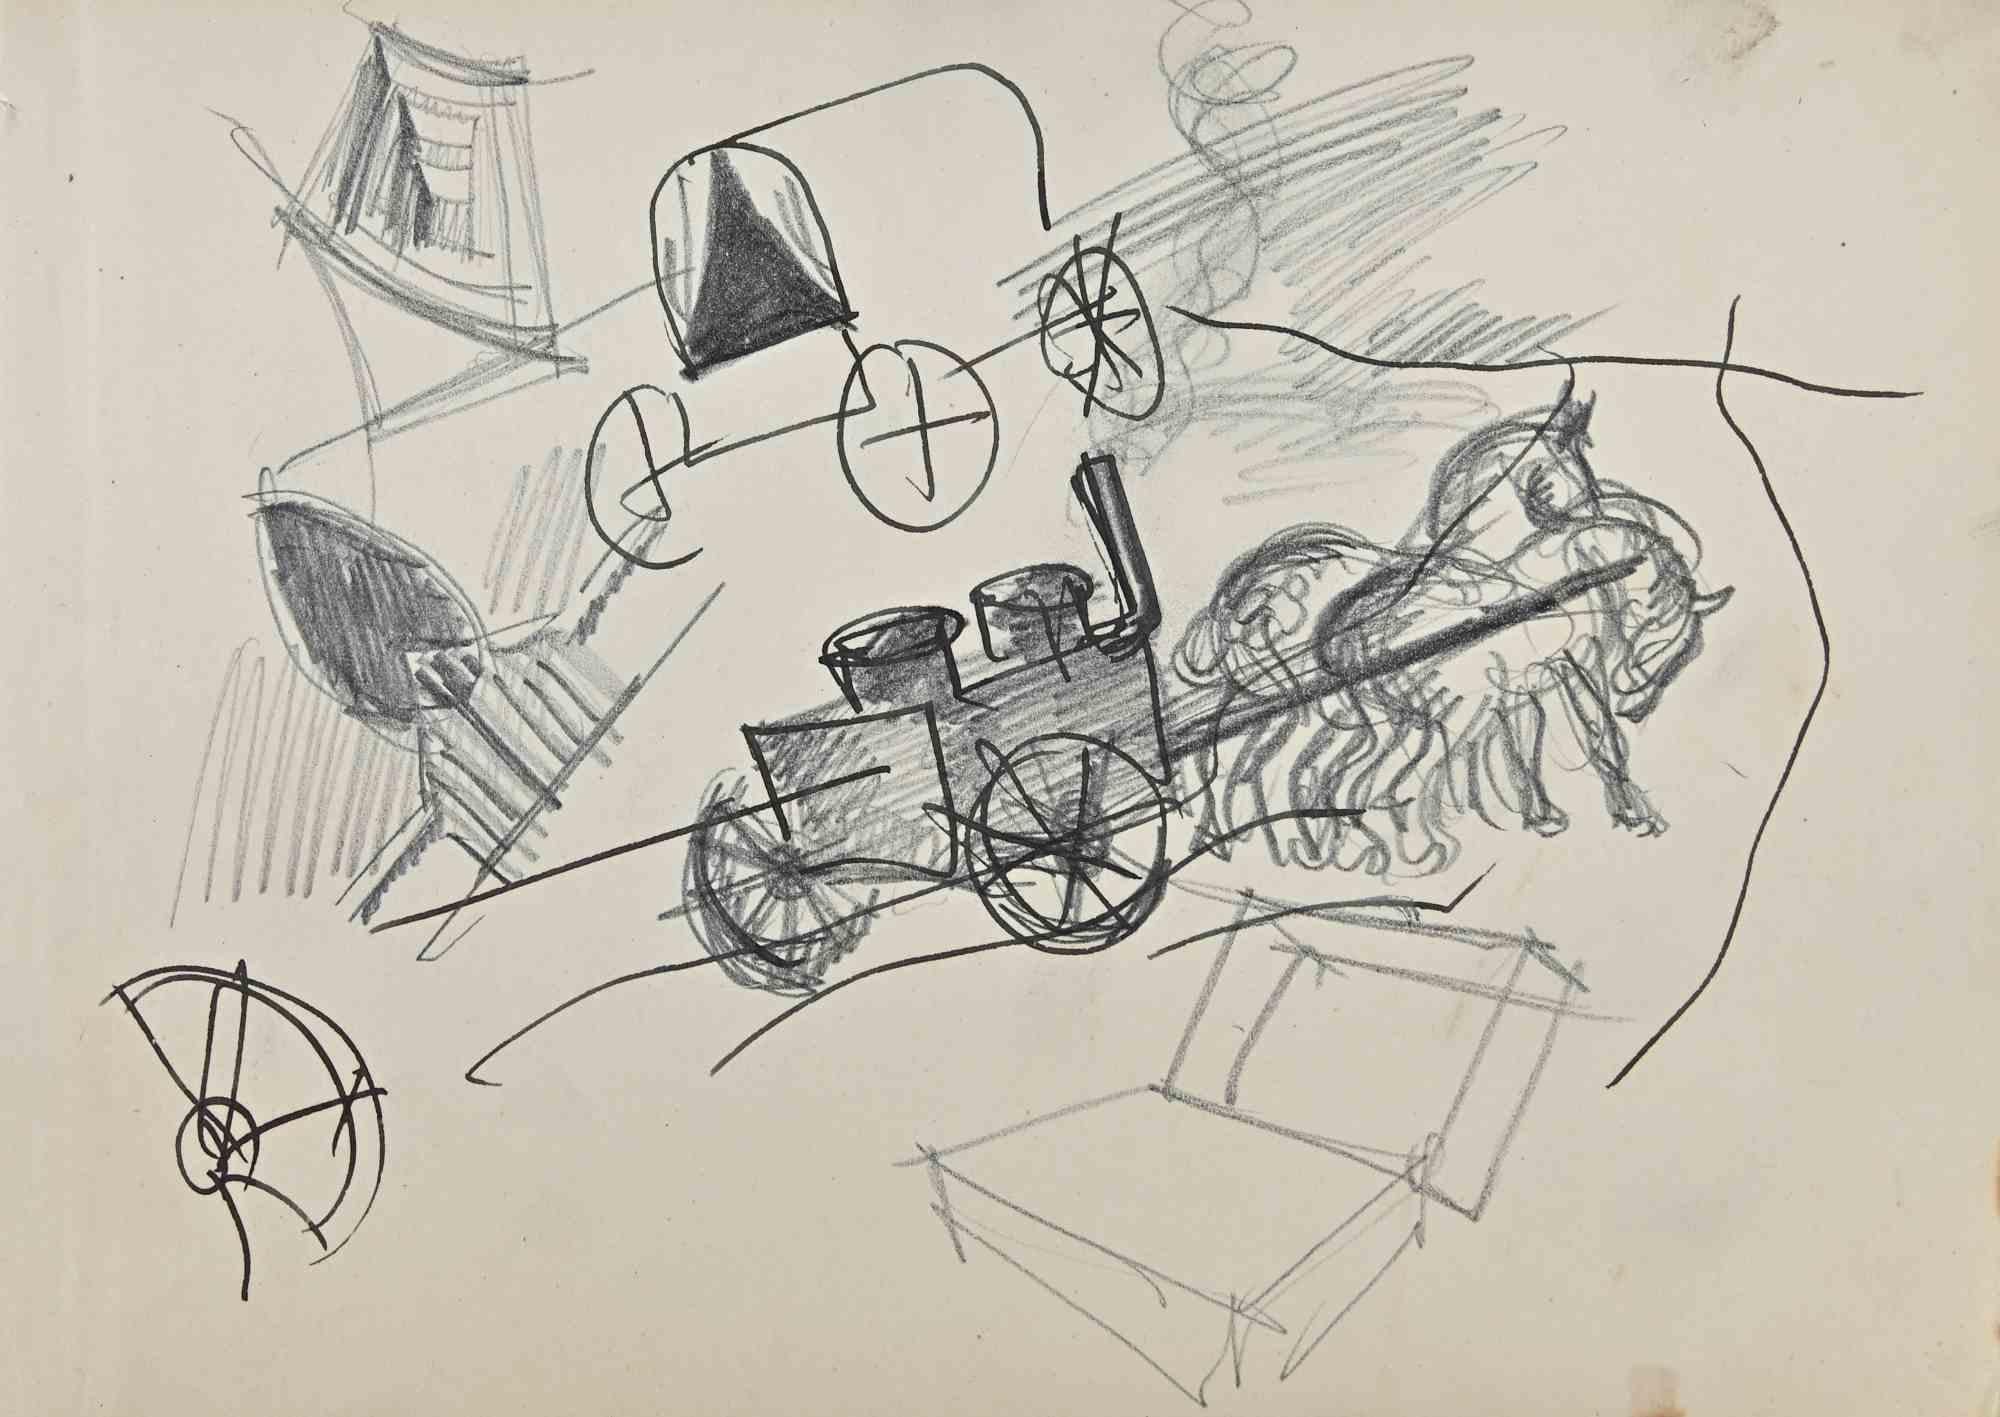 Die Kutsche ist eine Original-Zeichnung auf Papier des französischen Malers Norbert Meyre aus der Mitte des 20. Jahrhunderts.

Zeichnung mit Bleistift und Feder.

Gute Bedingungen.

Das Kunstwerk wird durch geschickte und schnelle Striche von